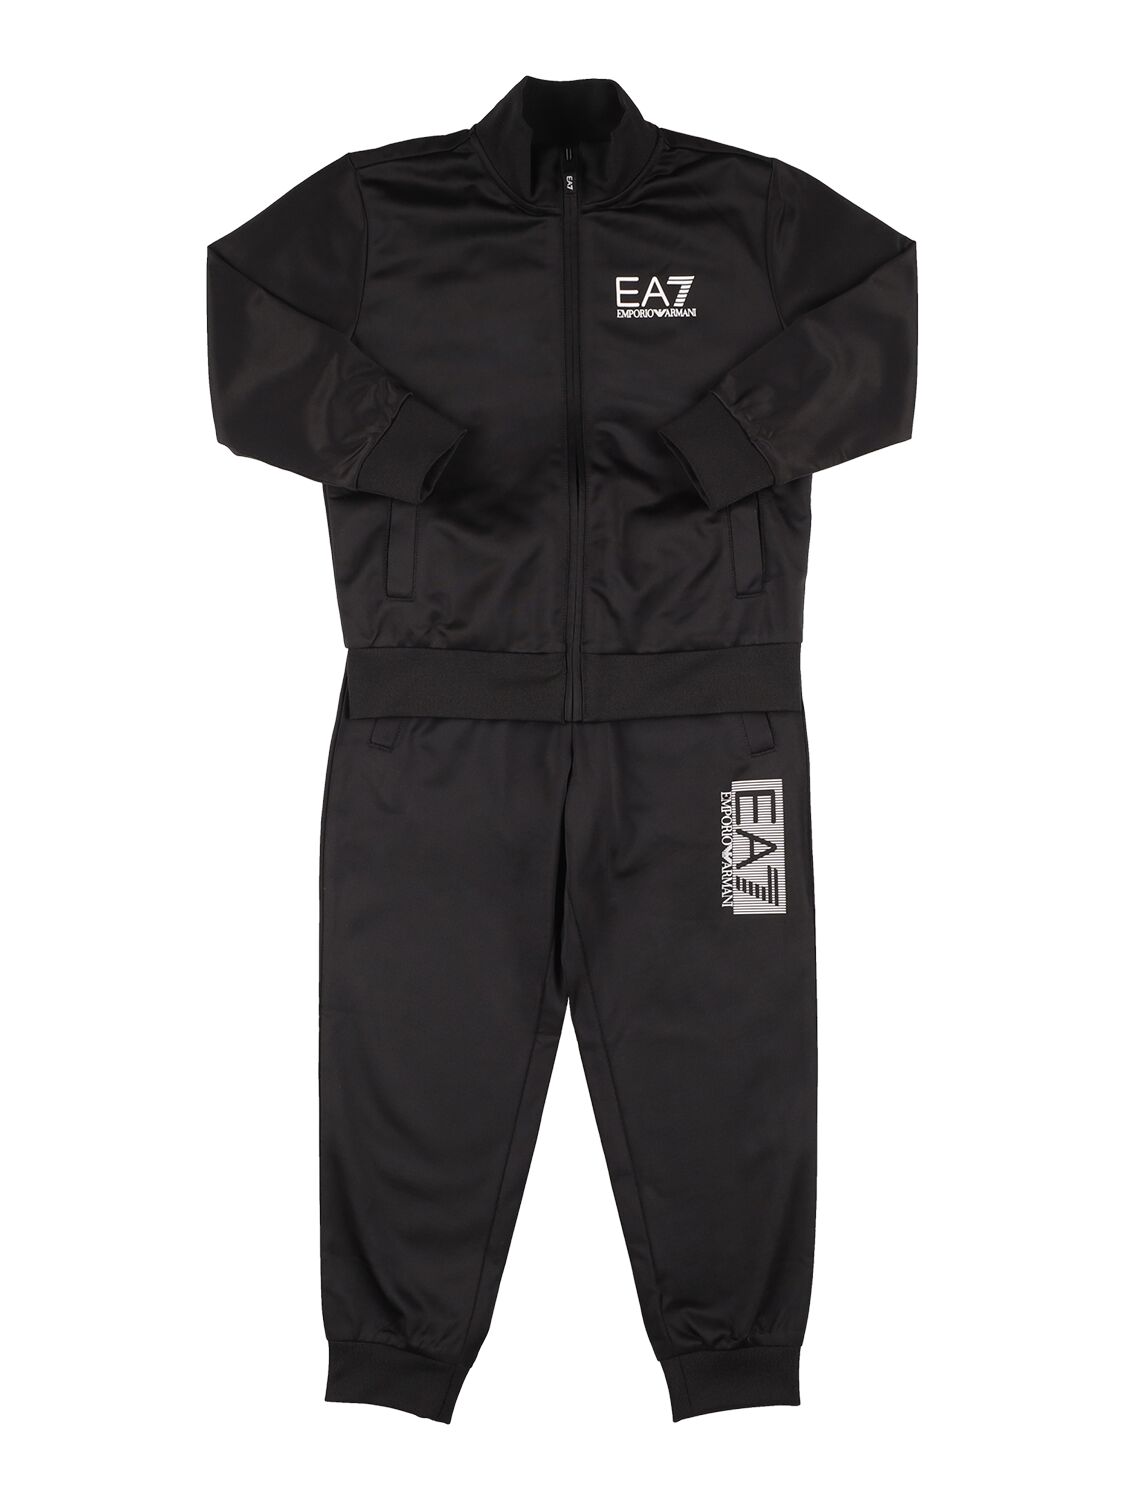 Ea7 Kids' Logo Cotton Sweatshirt & Sweatpants In Black